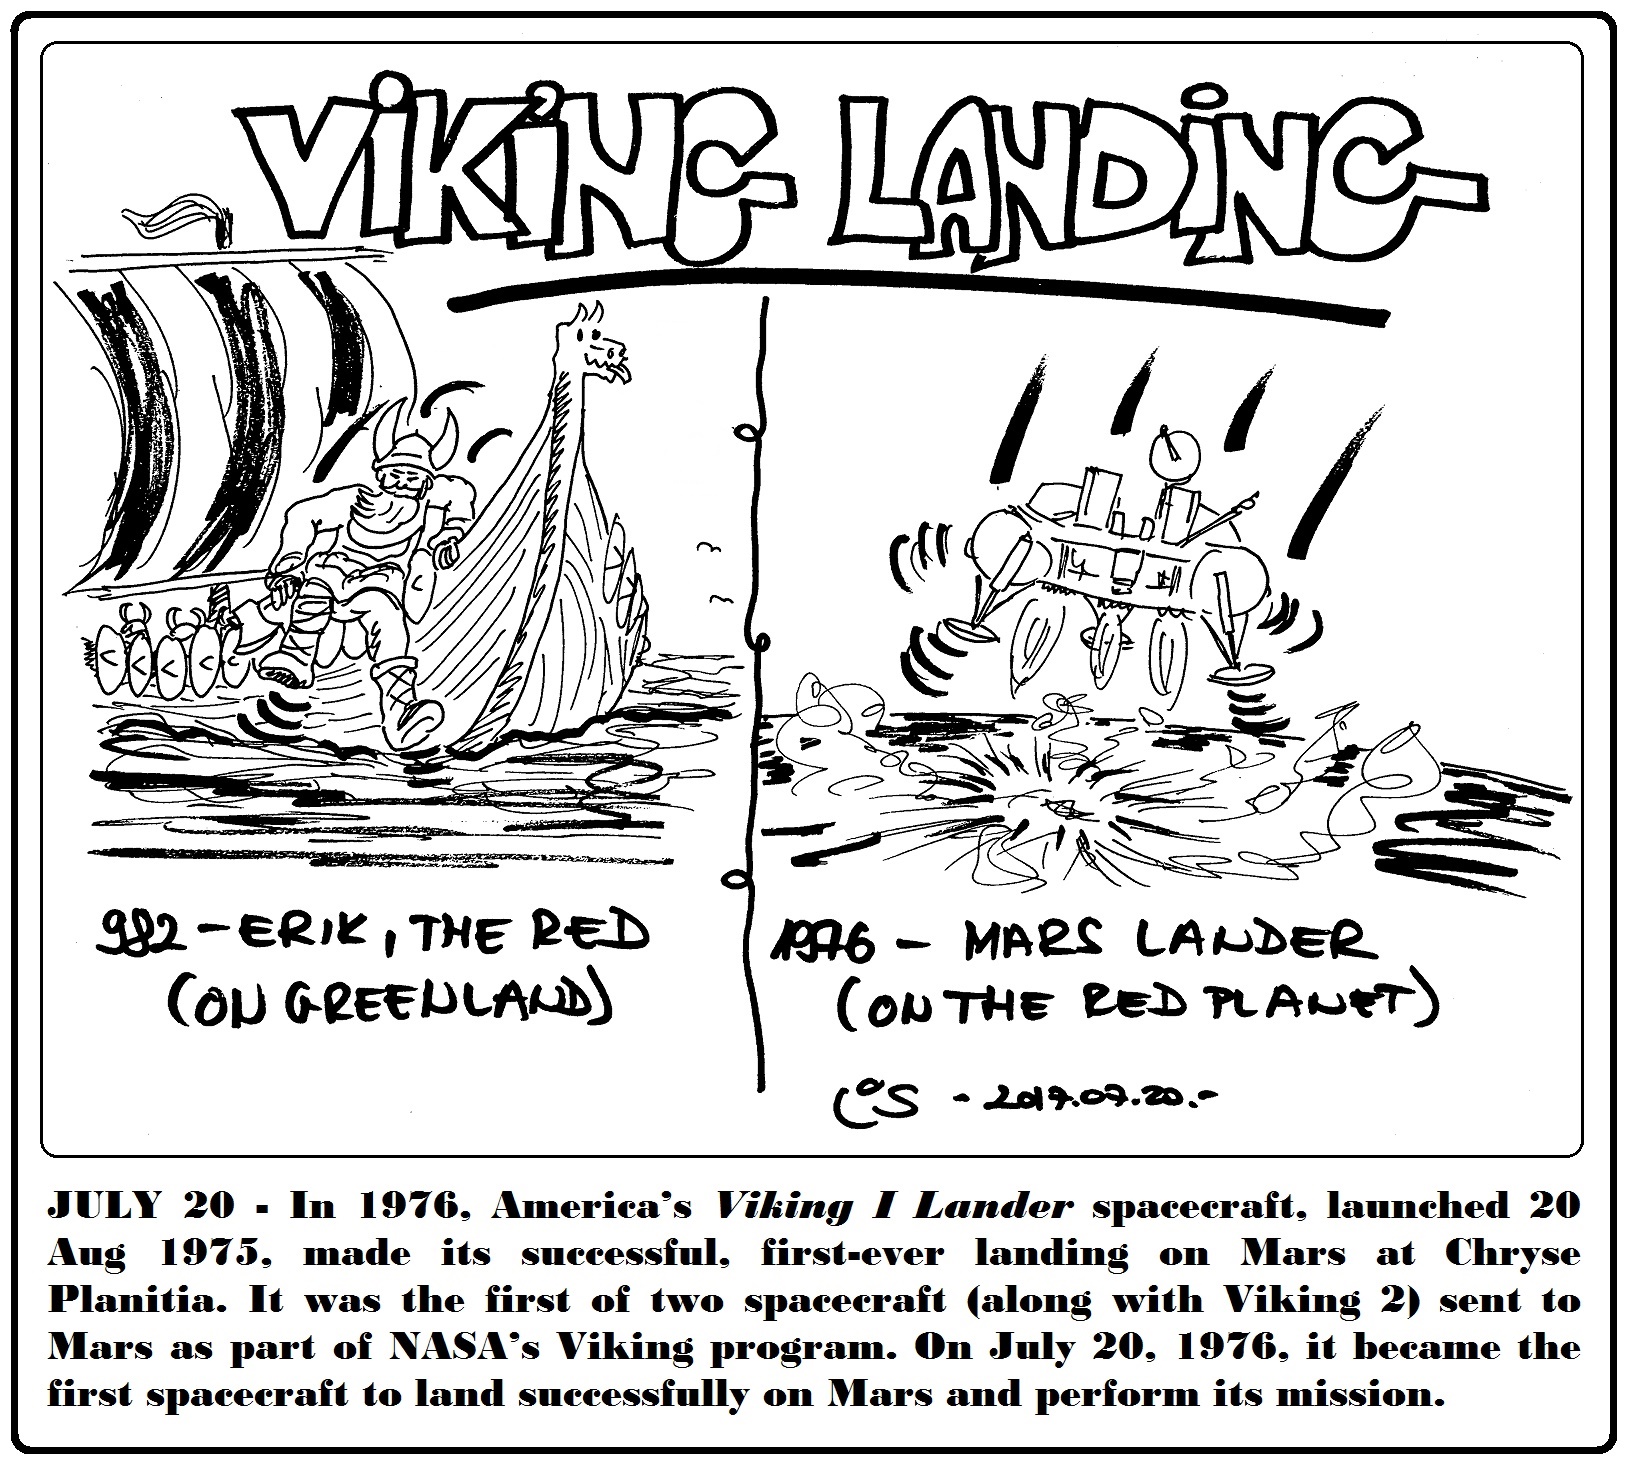 07_20_viking_landing.jpg